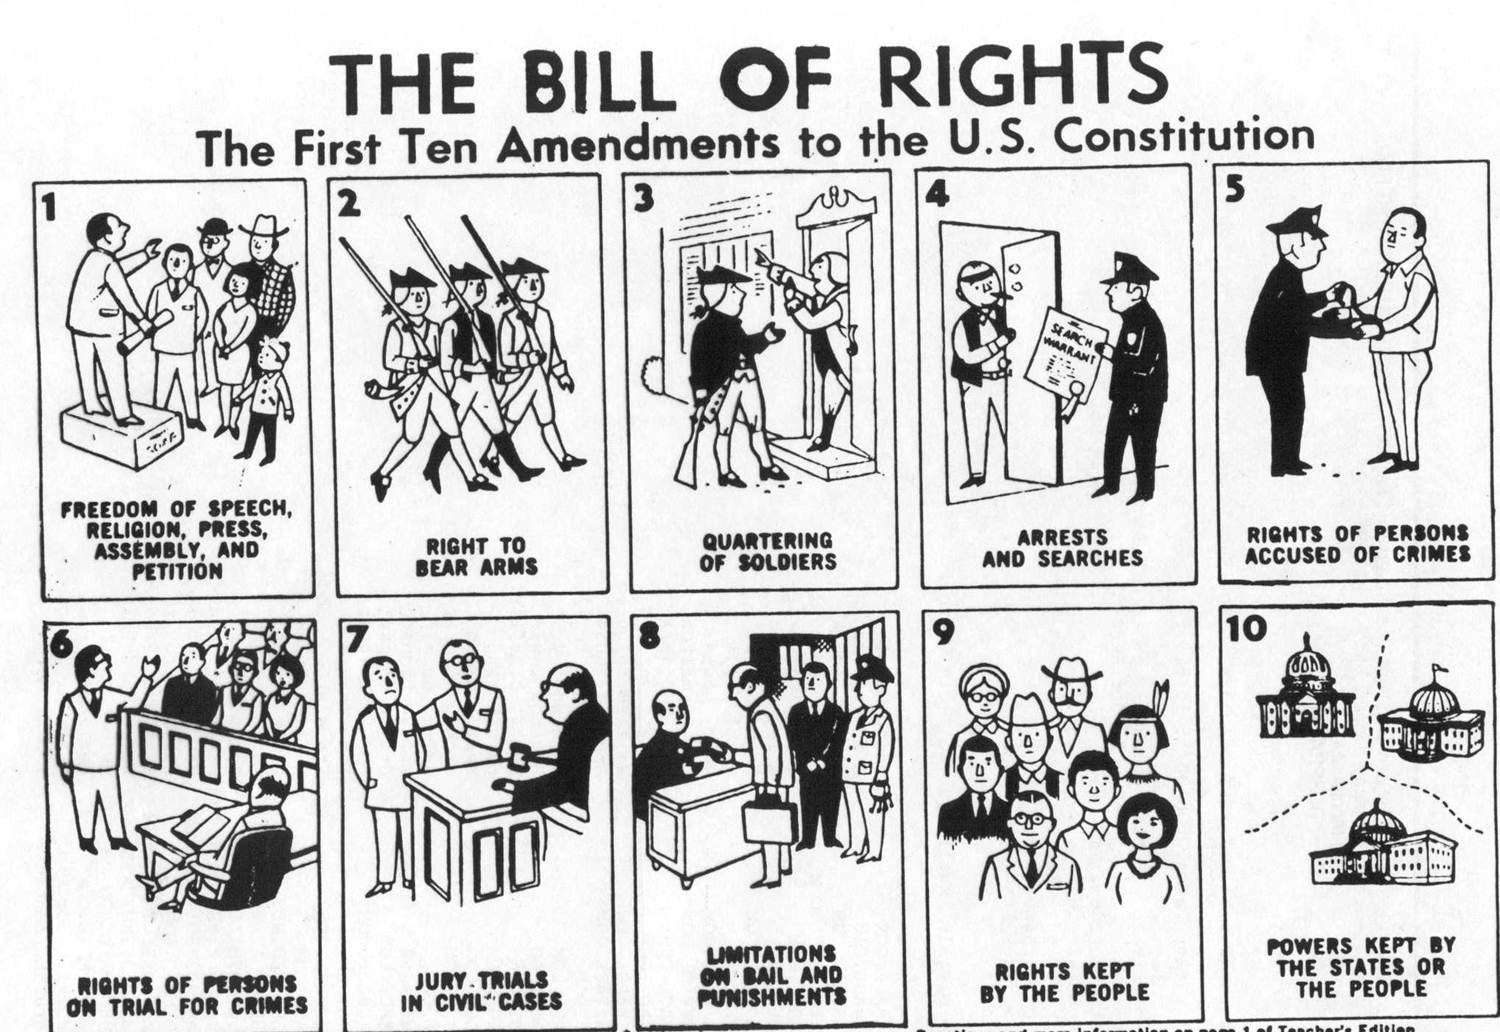 Bill of Rights Ten Amendments Image